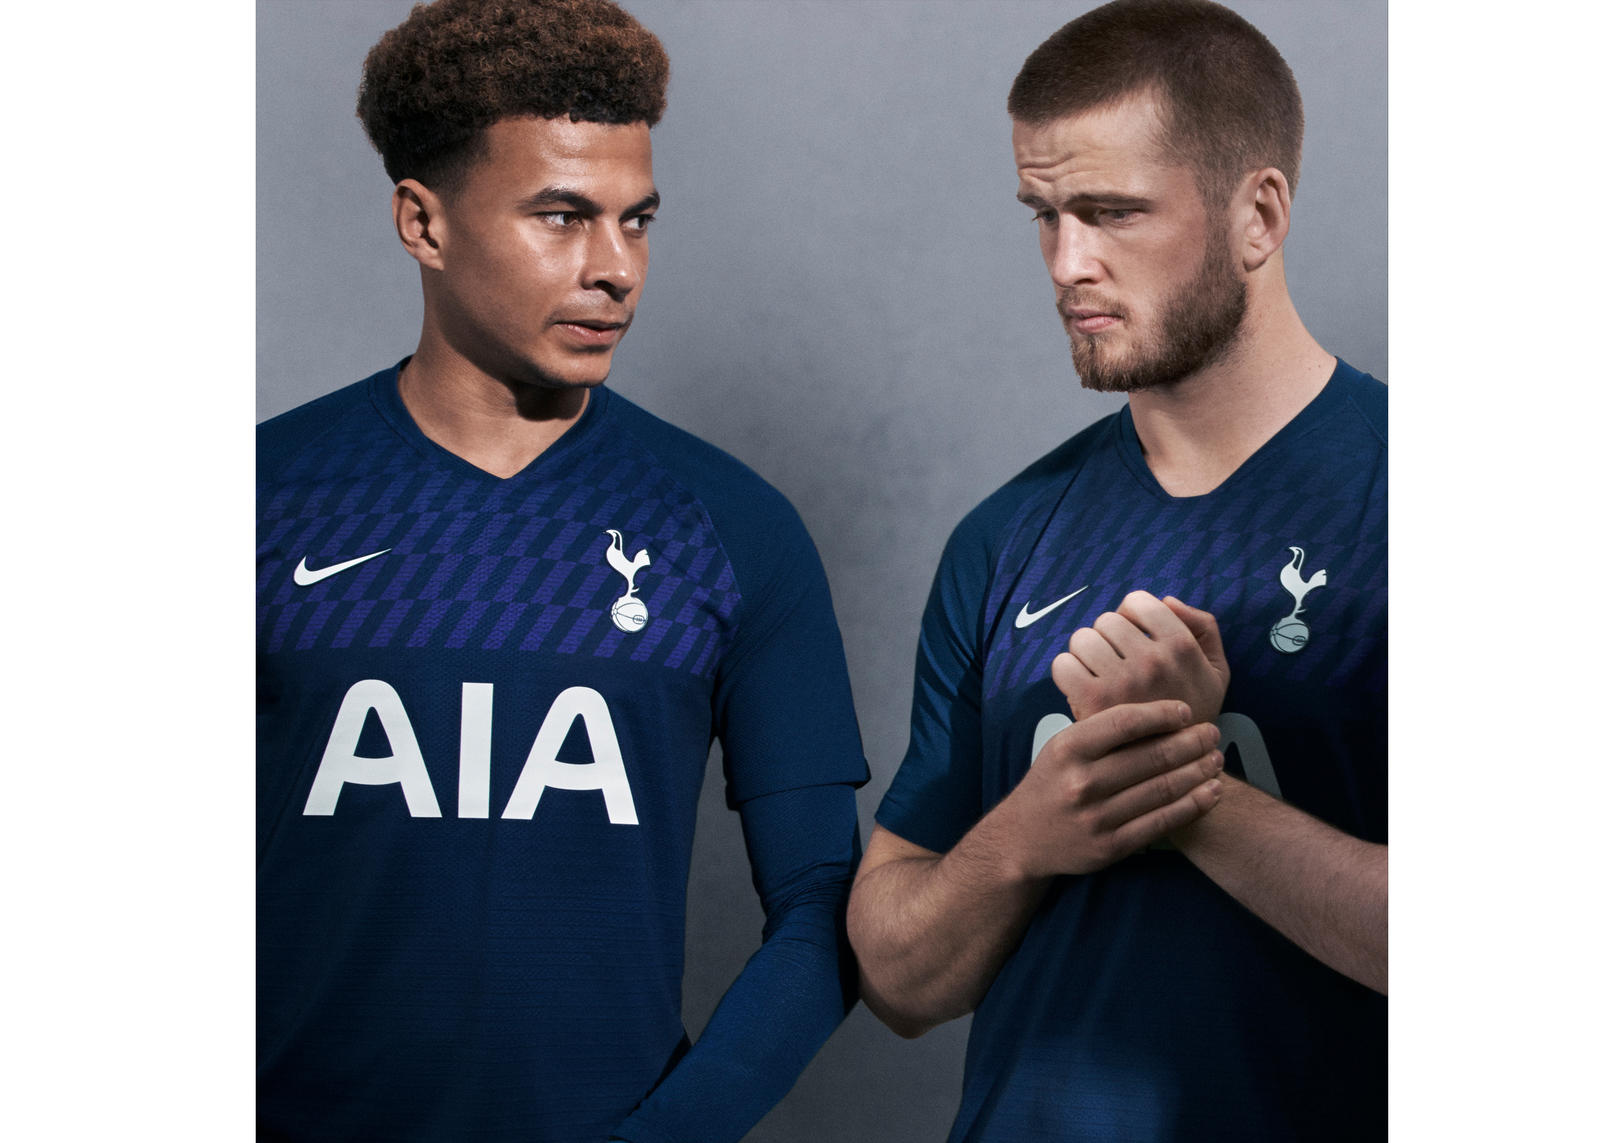 19/20 Tottenham Hotspur Third Away Blue Long Sleeve Jersey Shirt - Cheap  Soccer Jerseys Shop